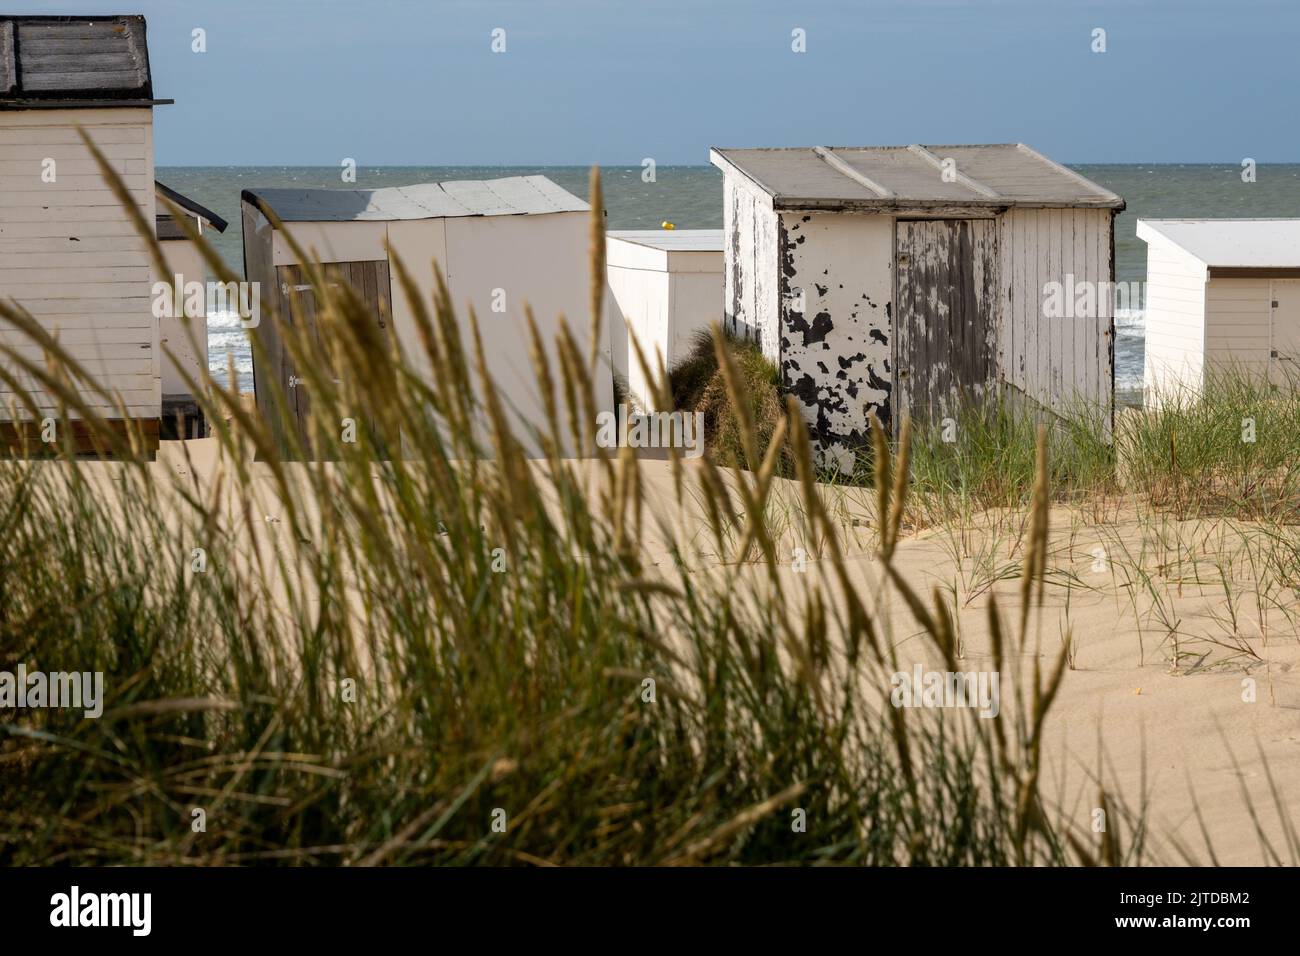 Calais, France - 19 juin 2022 : Plage de Calais avec cabines de plage blanches Banque D'Images